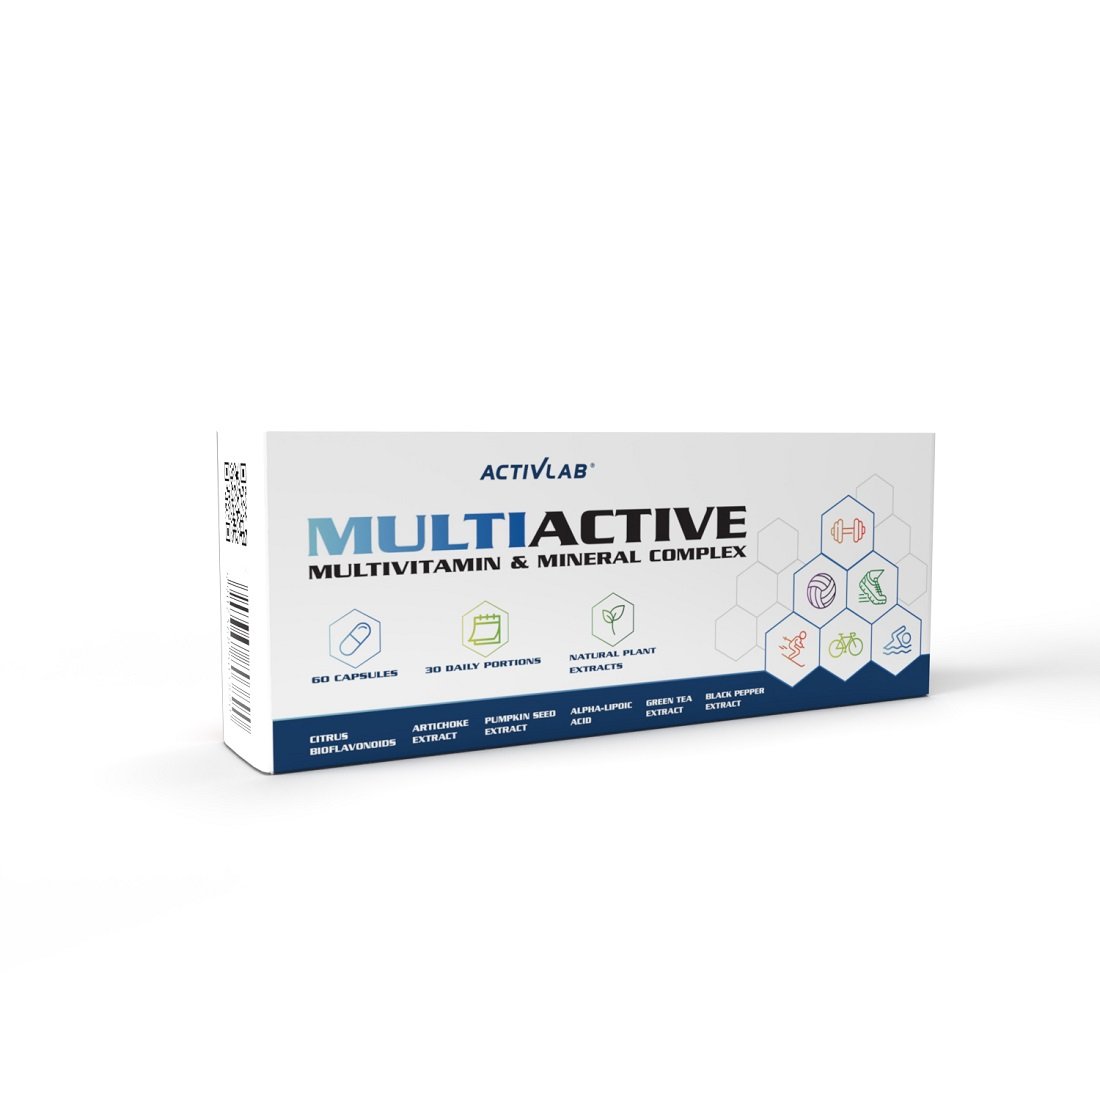 Витамины и минералы Activlab Pharma MultiActive, 60 капсул,  мл, ActivLab. Витамины и минералы. Поддержание здоровья Укрепление иммунитета 